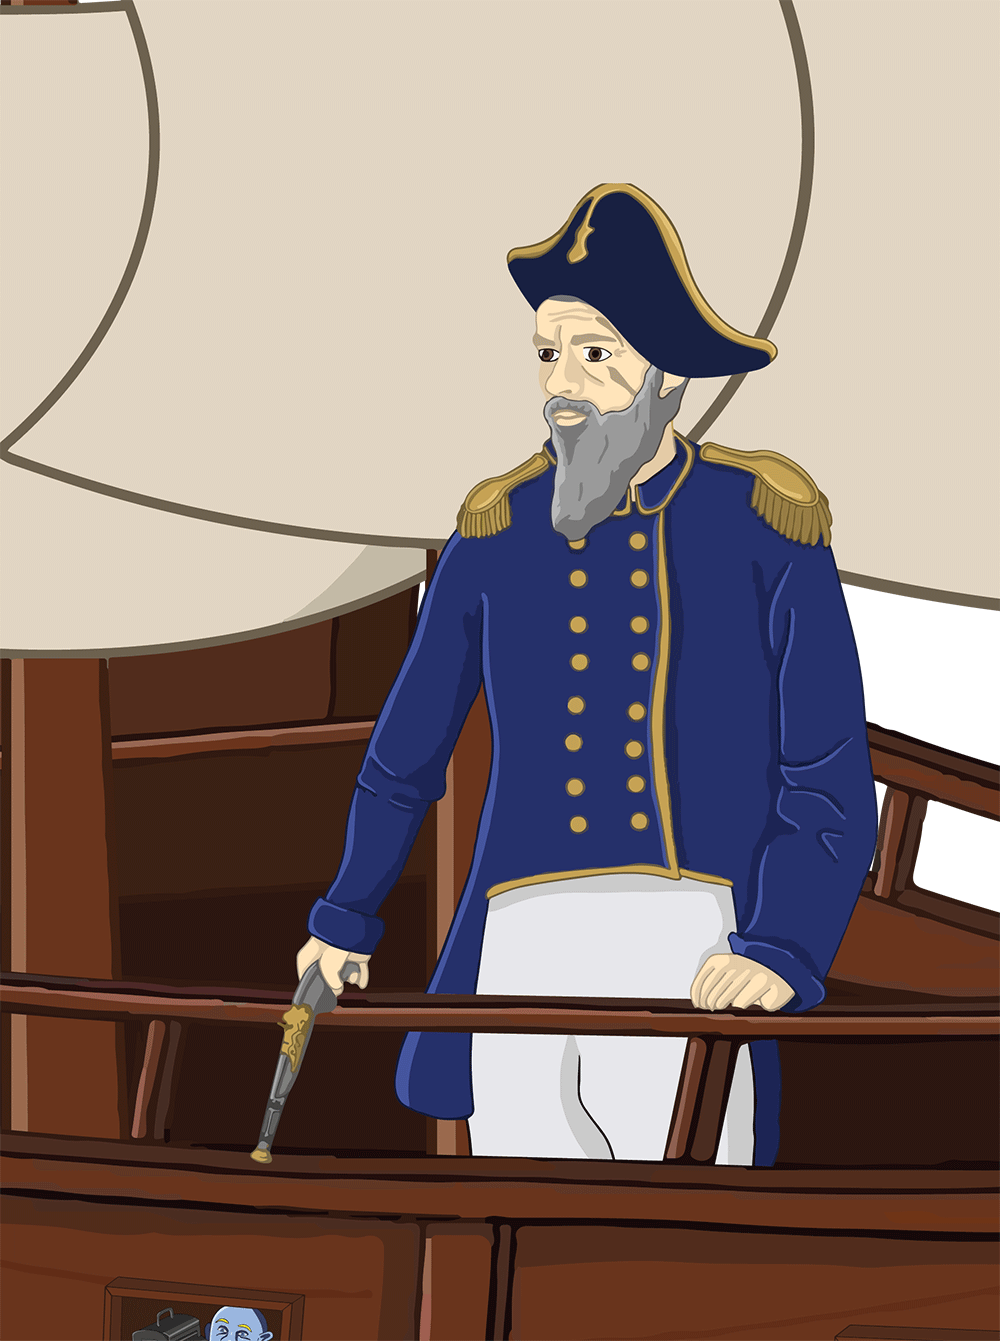 A ship captain.